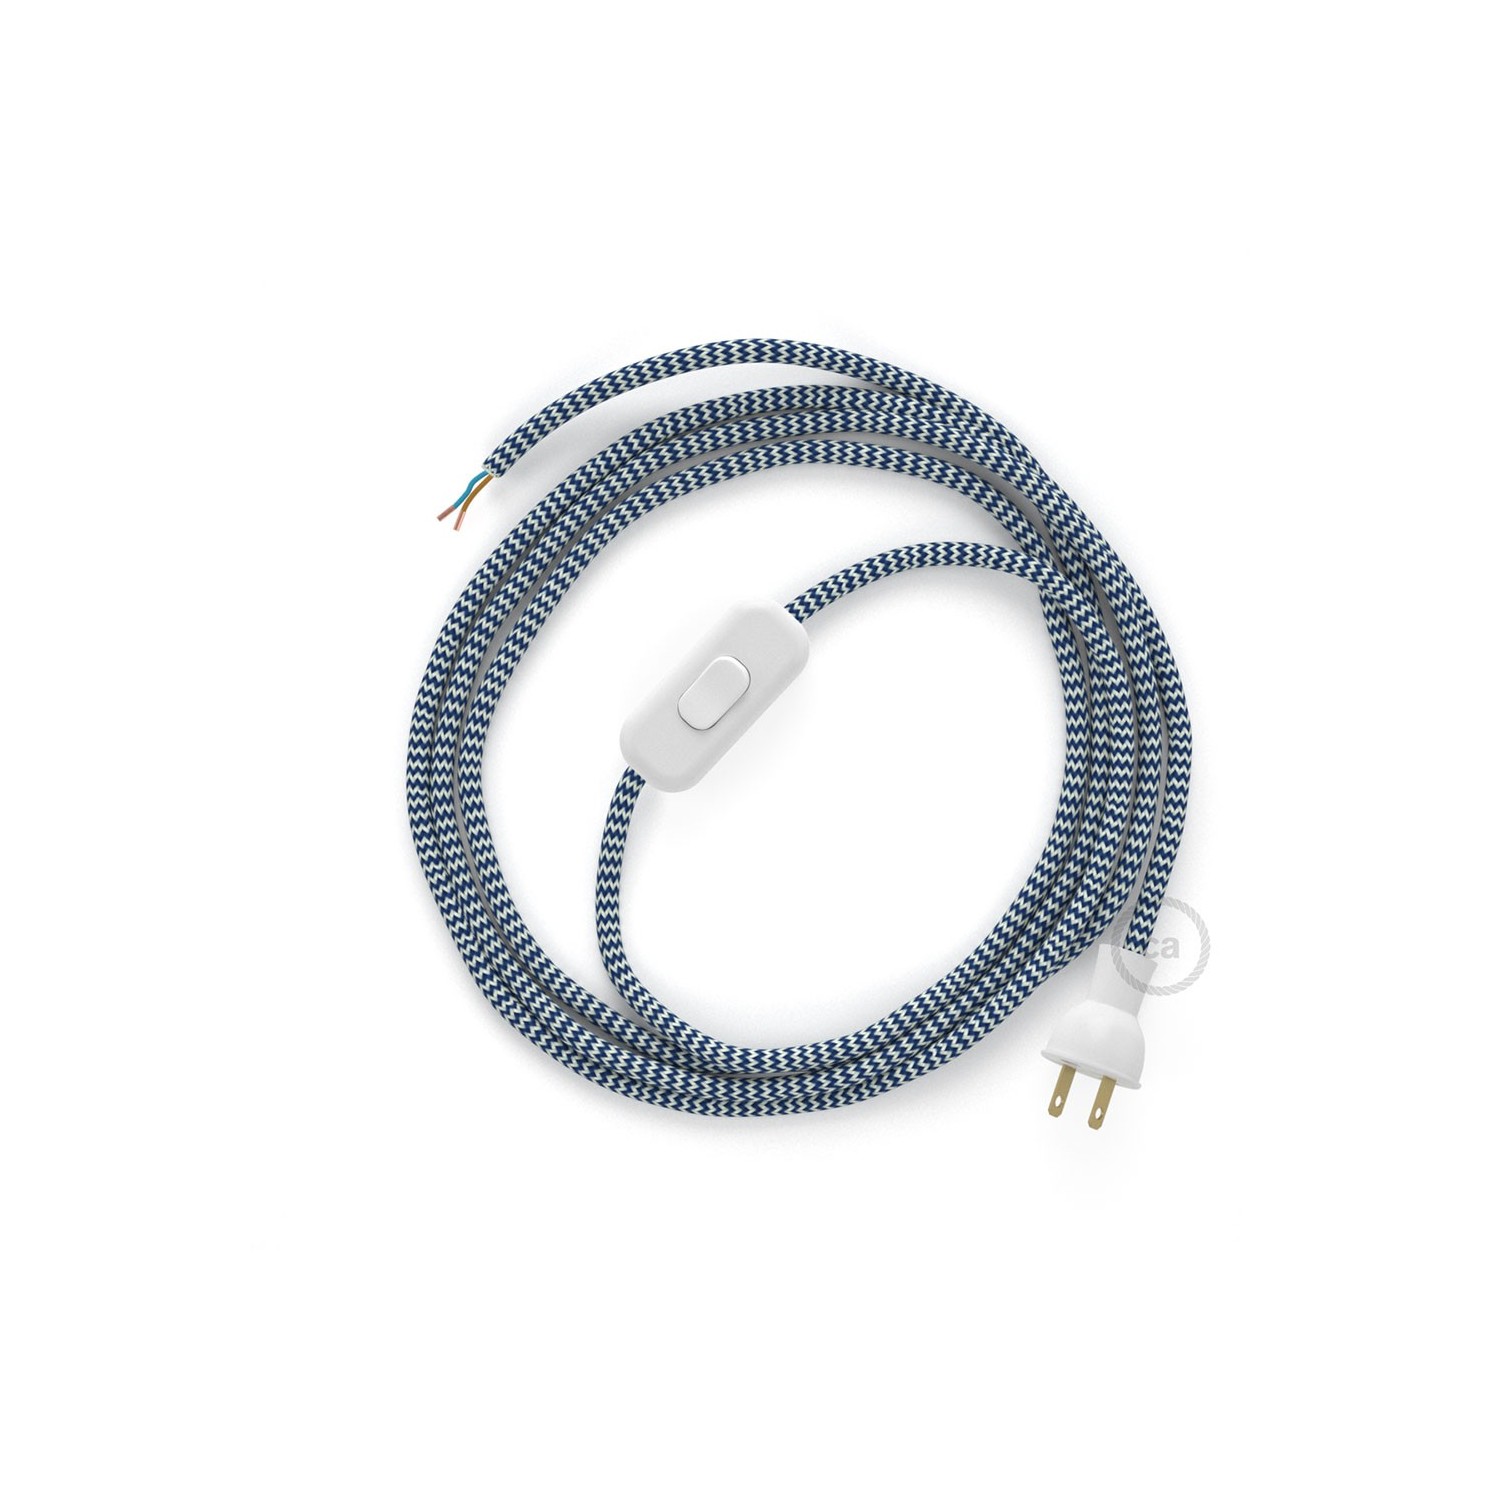 Cableado para lámpara de mesa, cable RZ12 Rayón ZigZag Blanco Azul 1,8 m. Elige el color de la clavija y del interruptor!